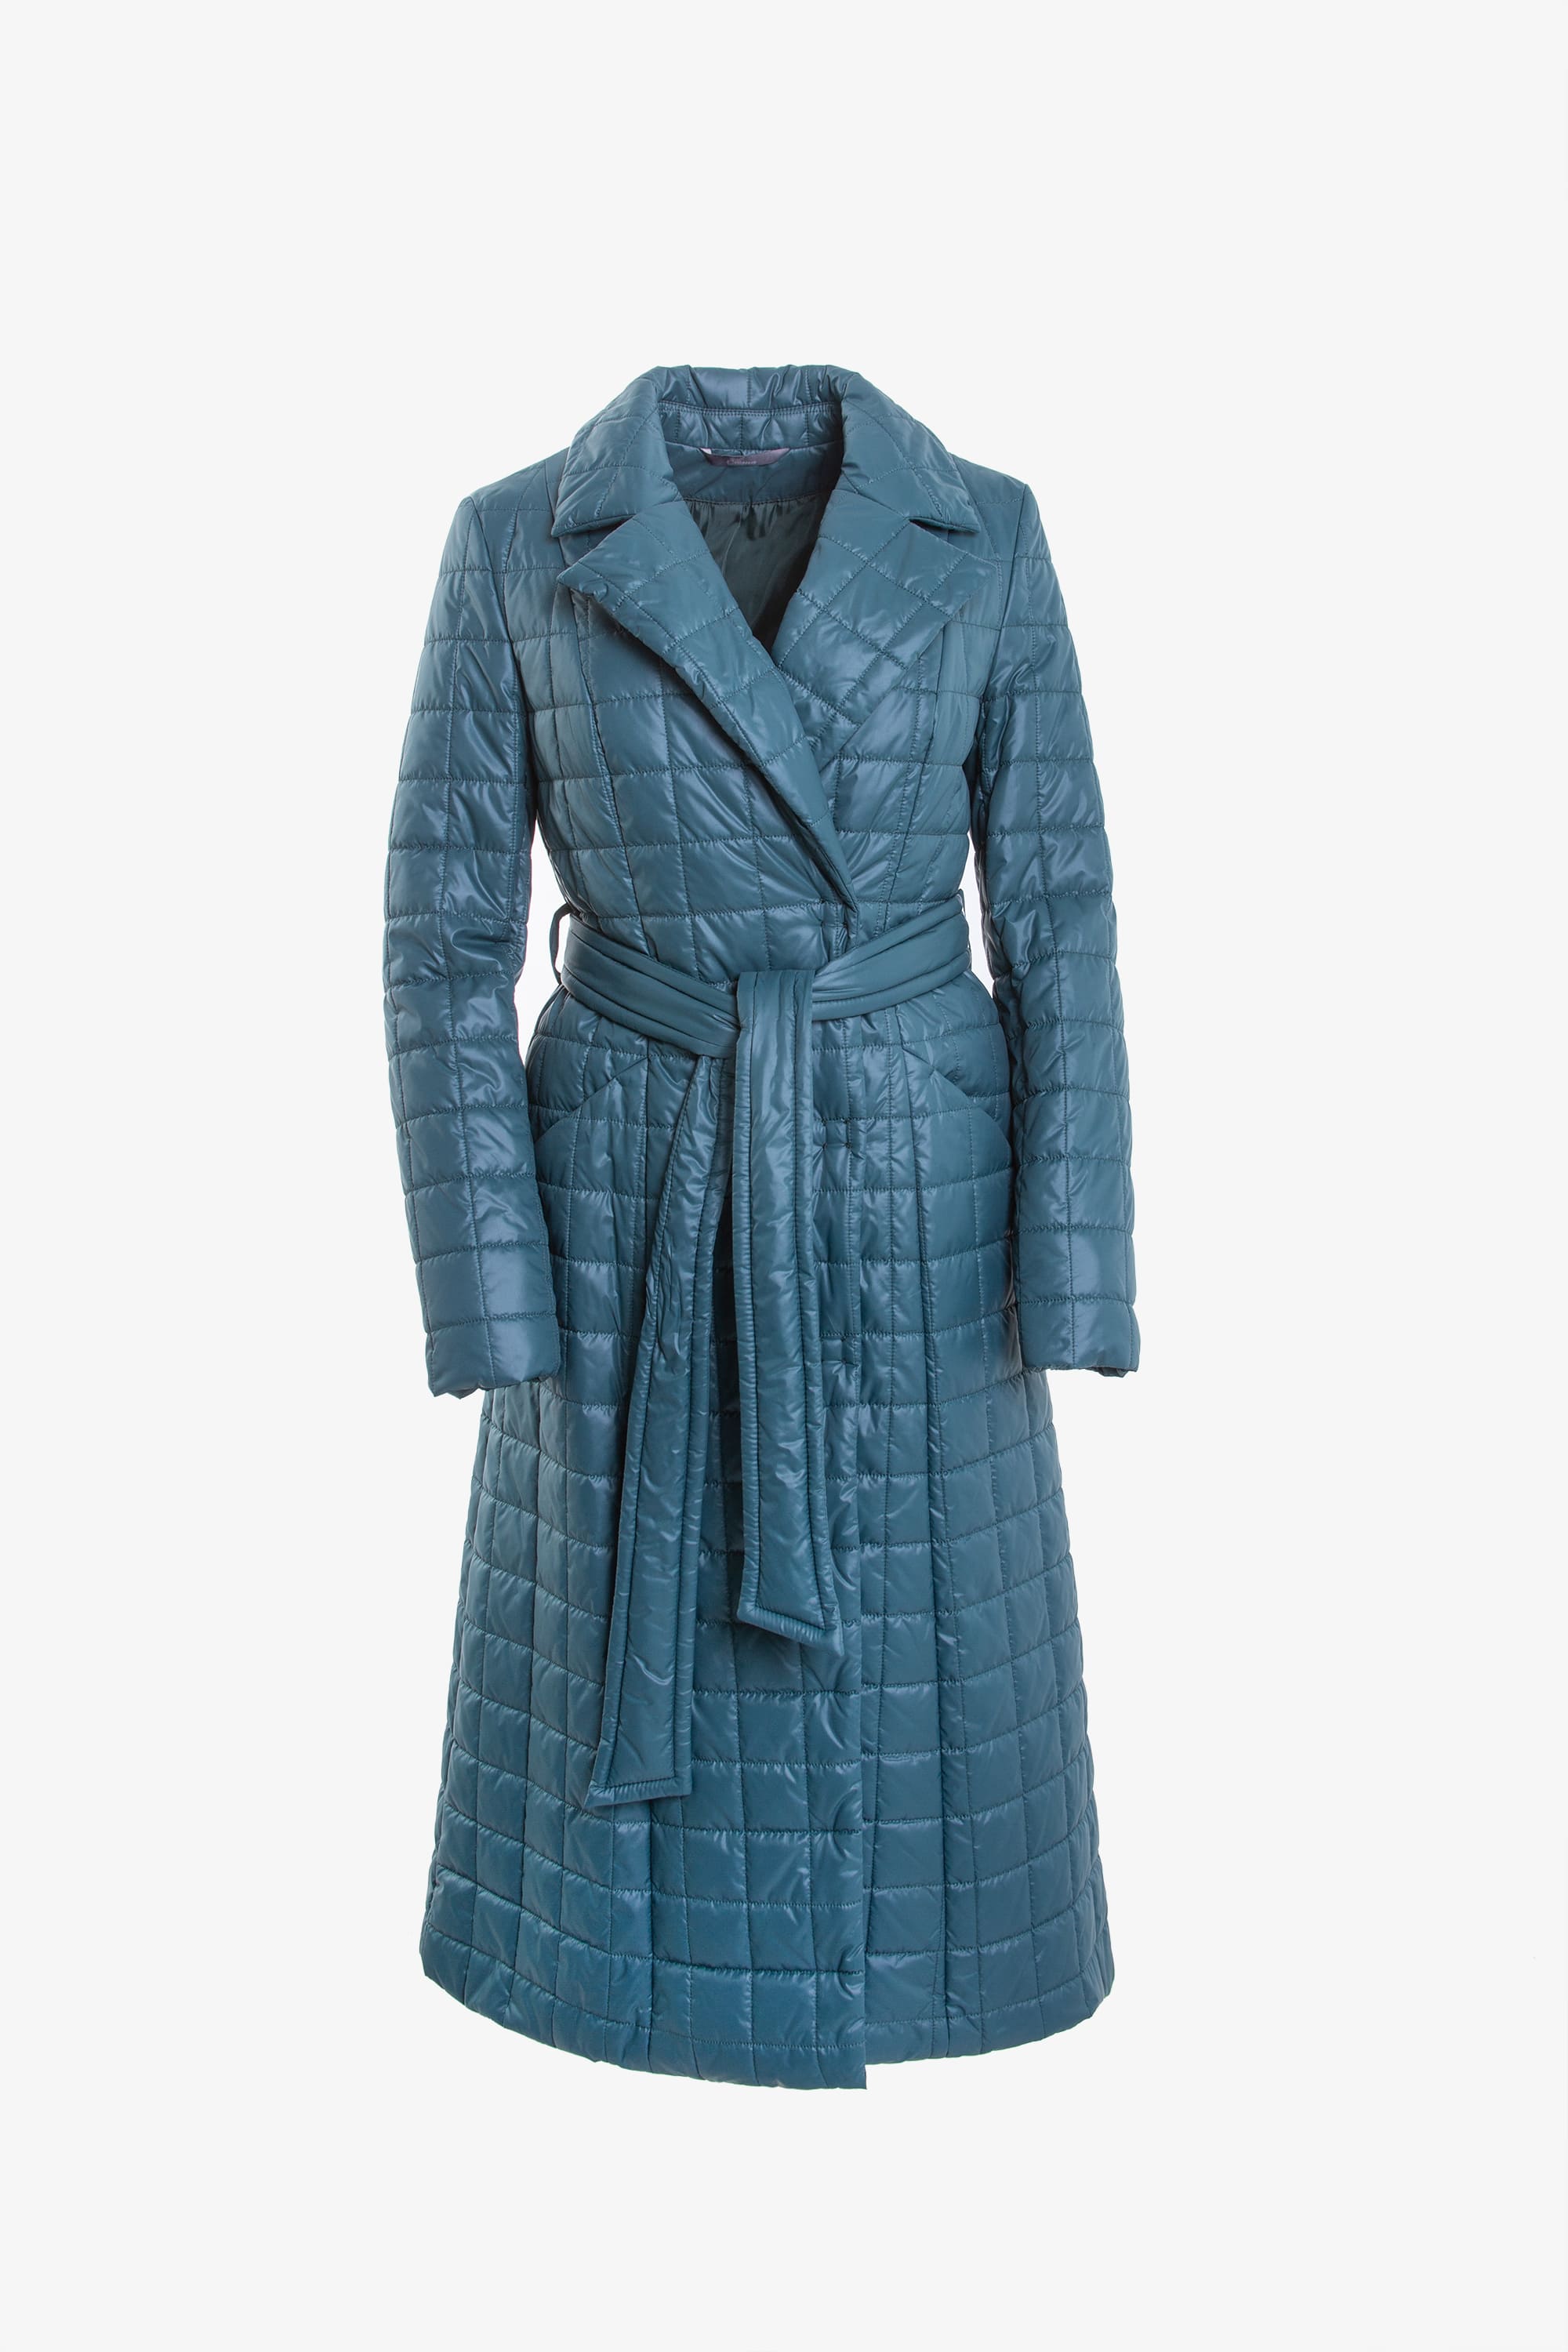 Пальто женское плащевое утепленное 5-11475-1. Фото 1.